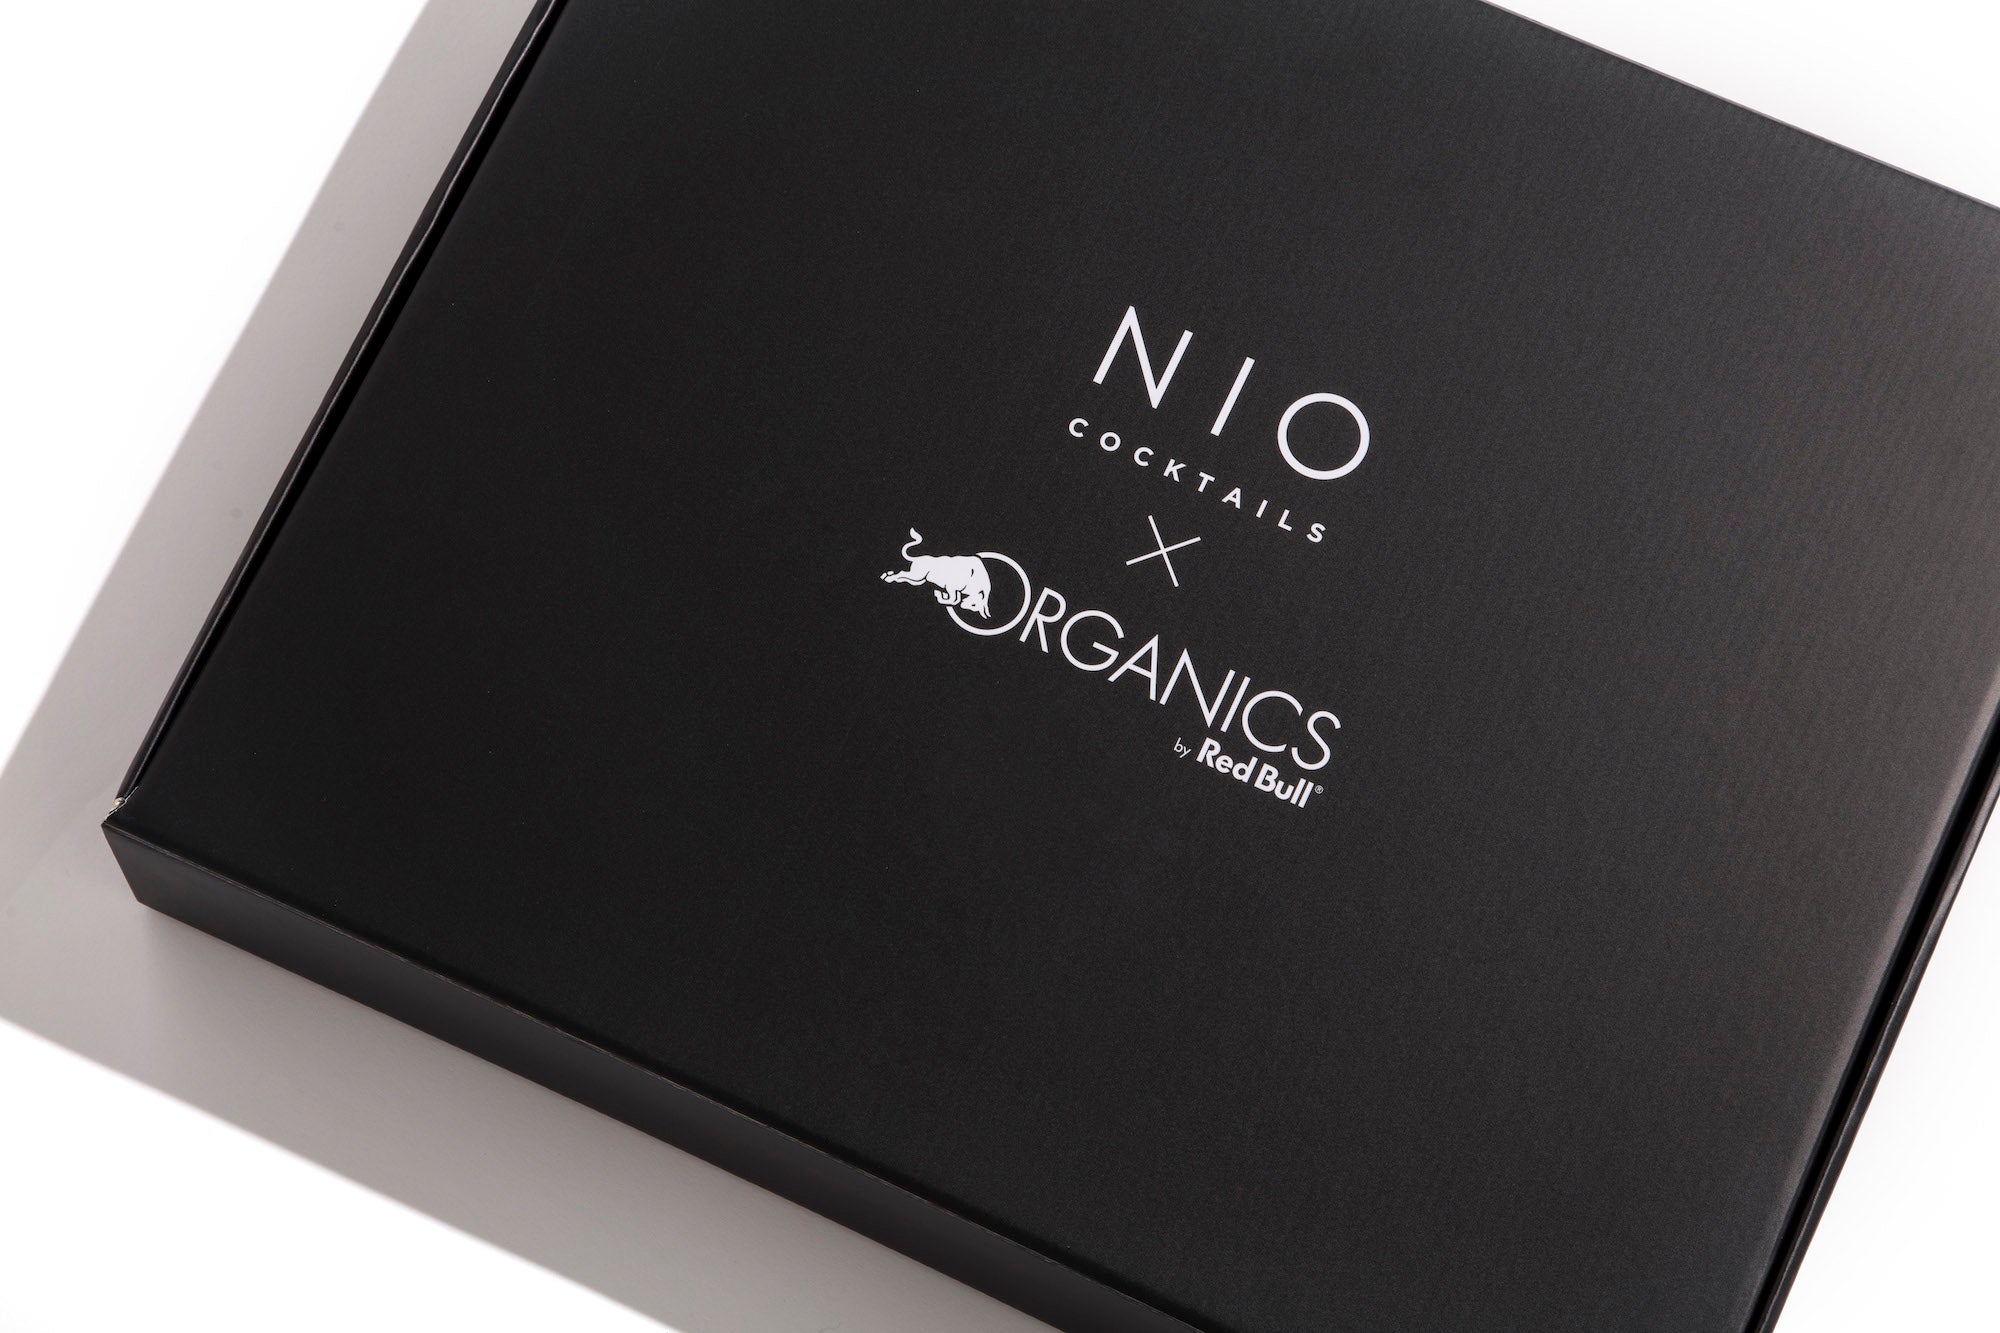 NIO Cocktails X Organics by Red Bull ist die Box für energiegeladene Mixologie auf Basis von Bio-Zutaten.